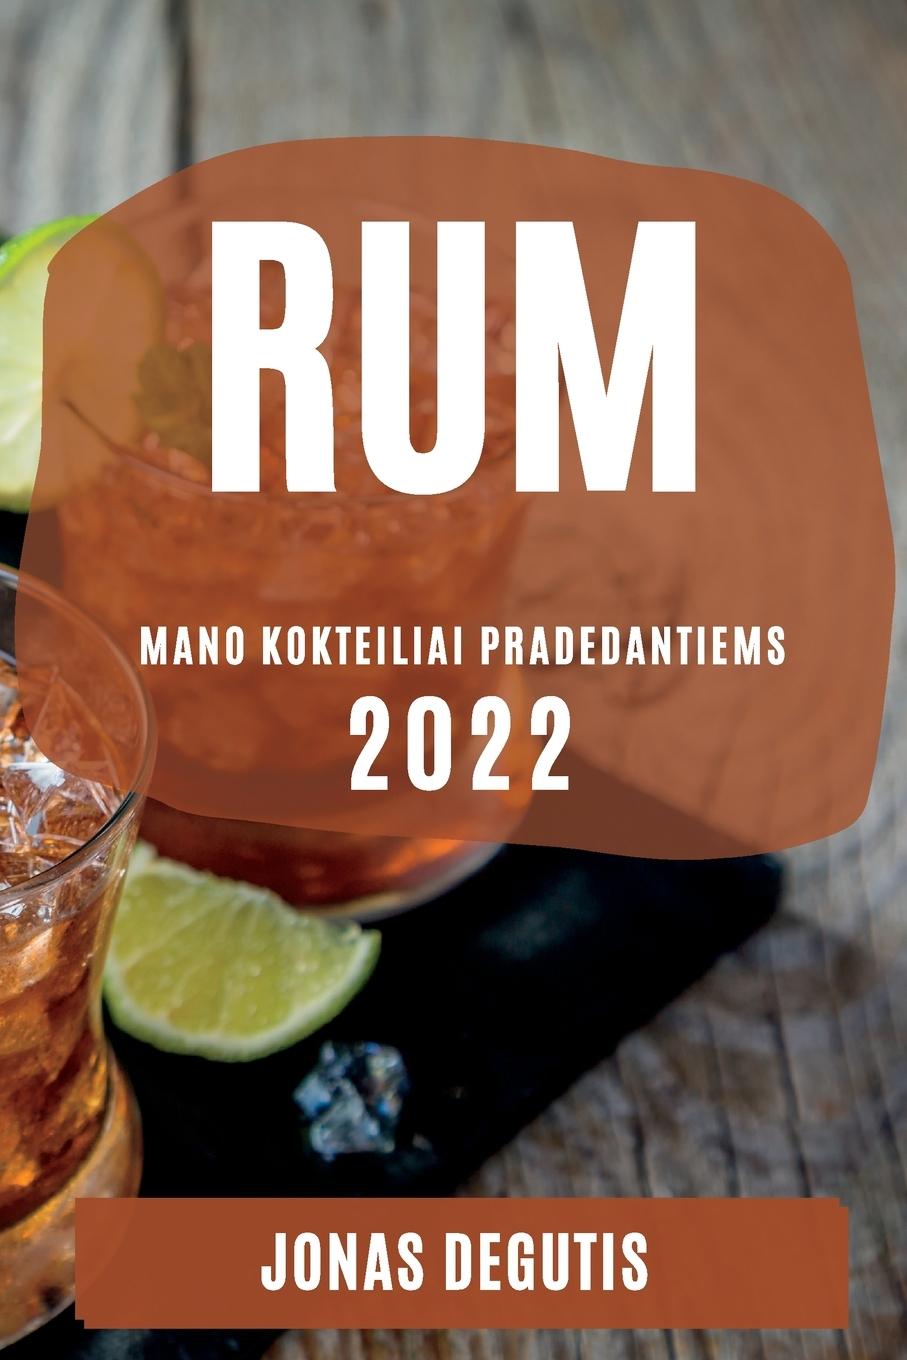 Book Rum 2022 